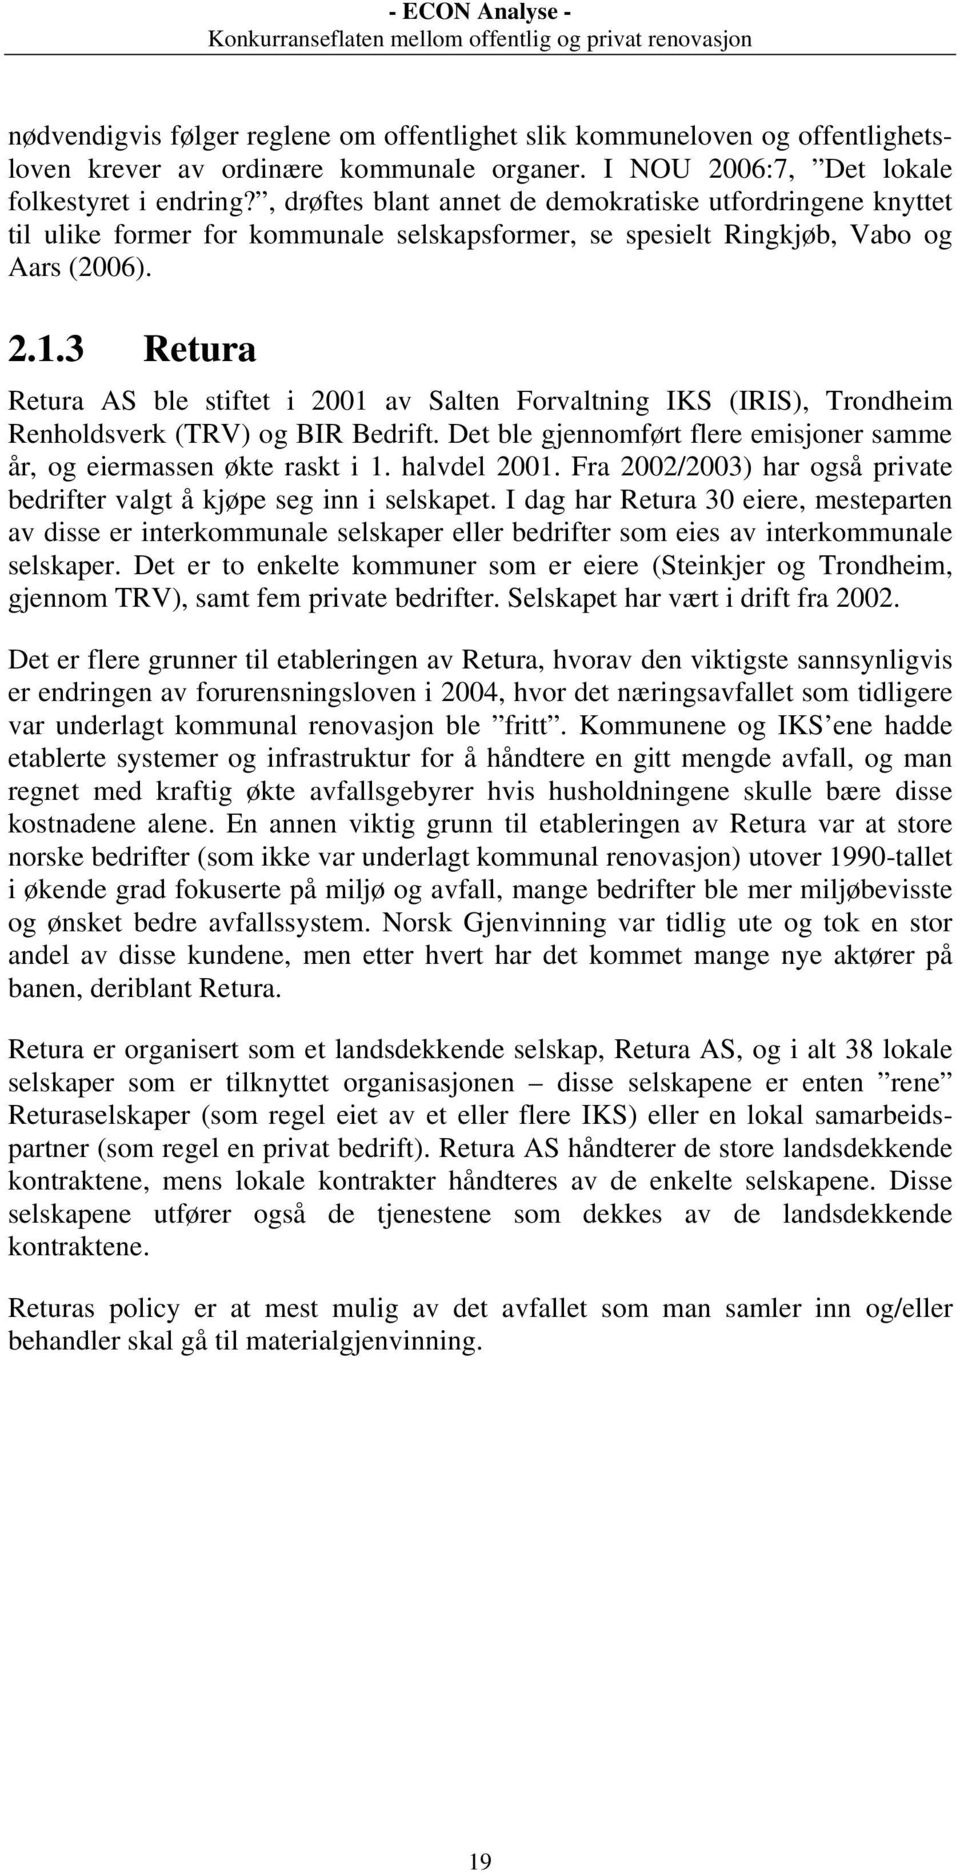 3 Retura Retura AS ble stiftet i 2001 av Salten Forvaltning IKS (IRIS), Trondheim Renholdsverk (TRV) og BIR Bedrift. Det ble gjennomført flere emisjoner samme år, og eiermassen økte raskt i 1.